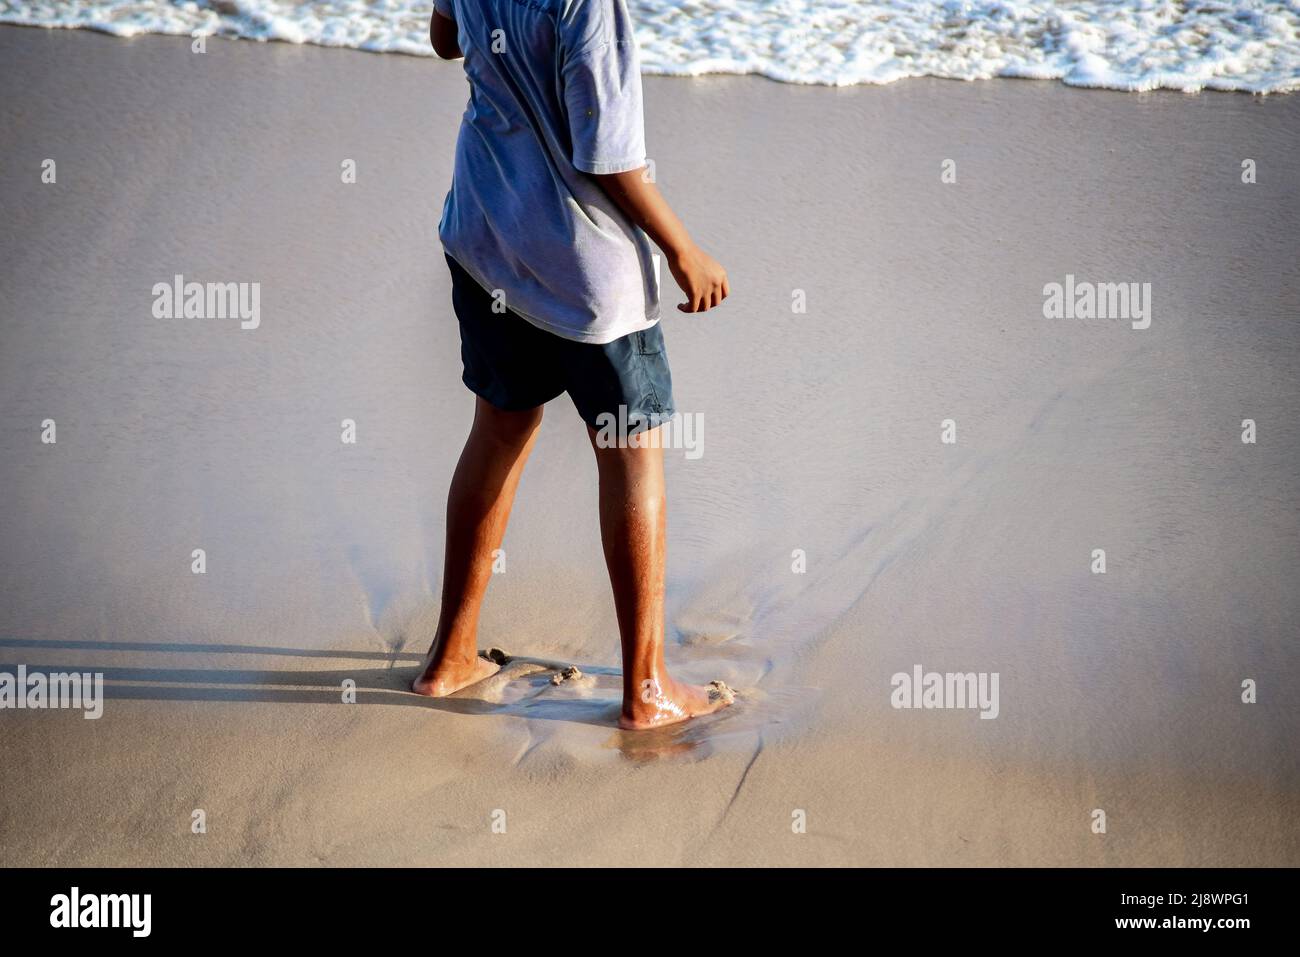 Parte inferior de una persona de pie sobre la arena de la playa. Ciudad de Salvador, estado de Bahia, Brasil. Foto de stock